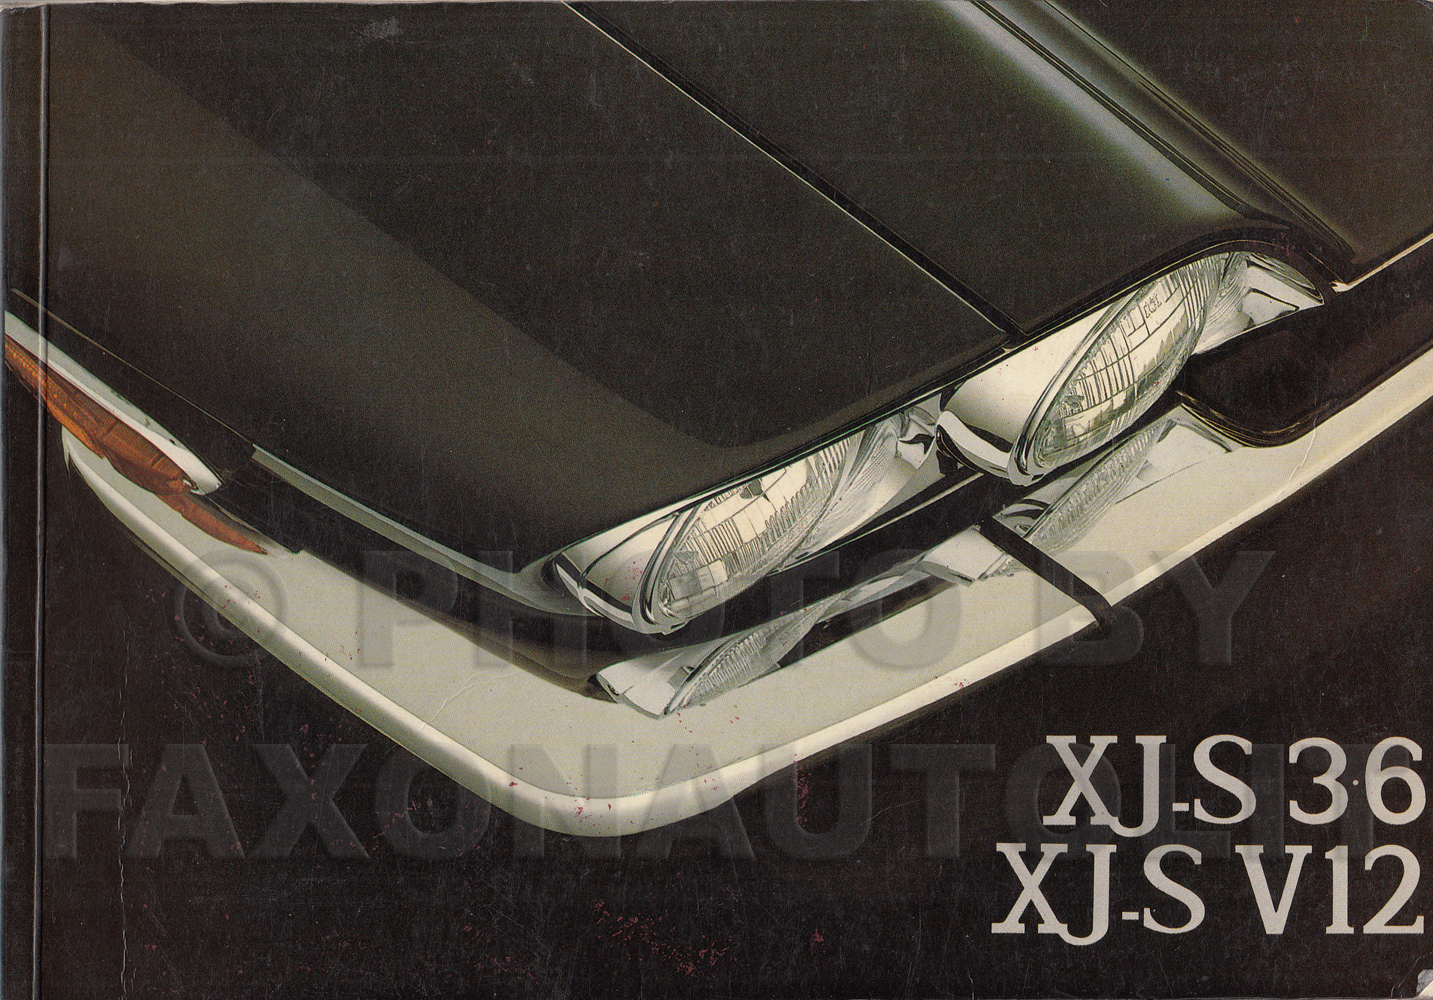 1986-1987 Jaguar XJS 6 & 12 Owner's Manual Original